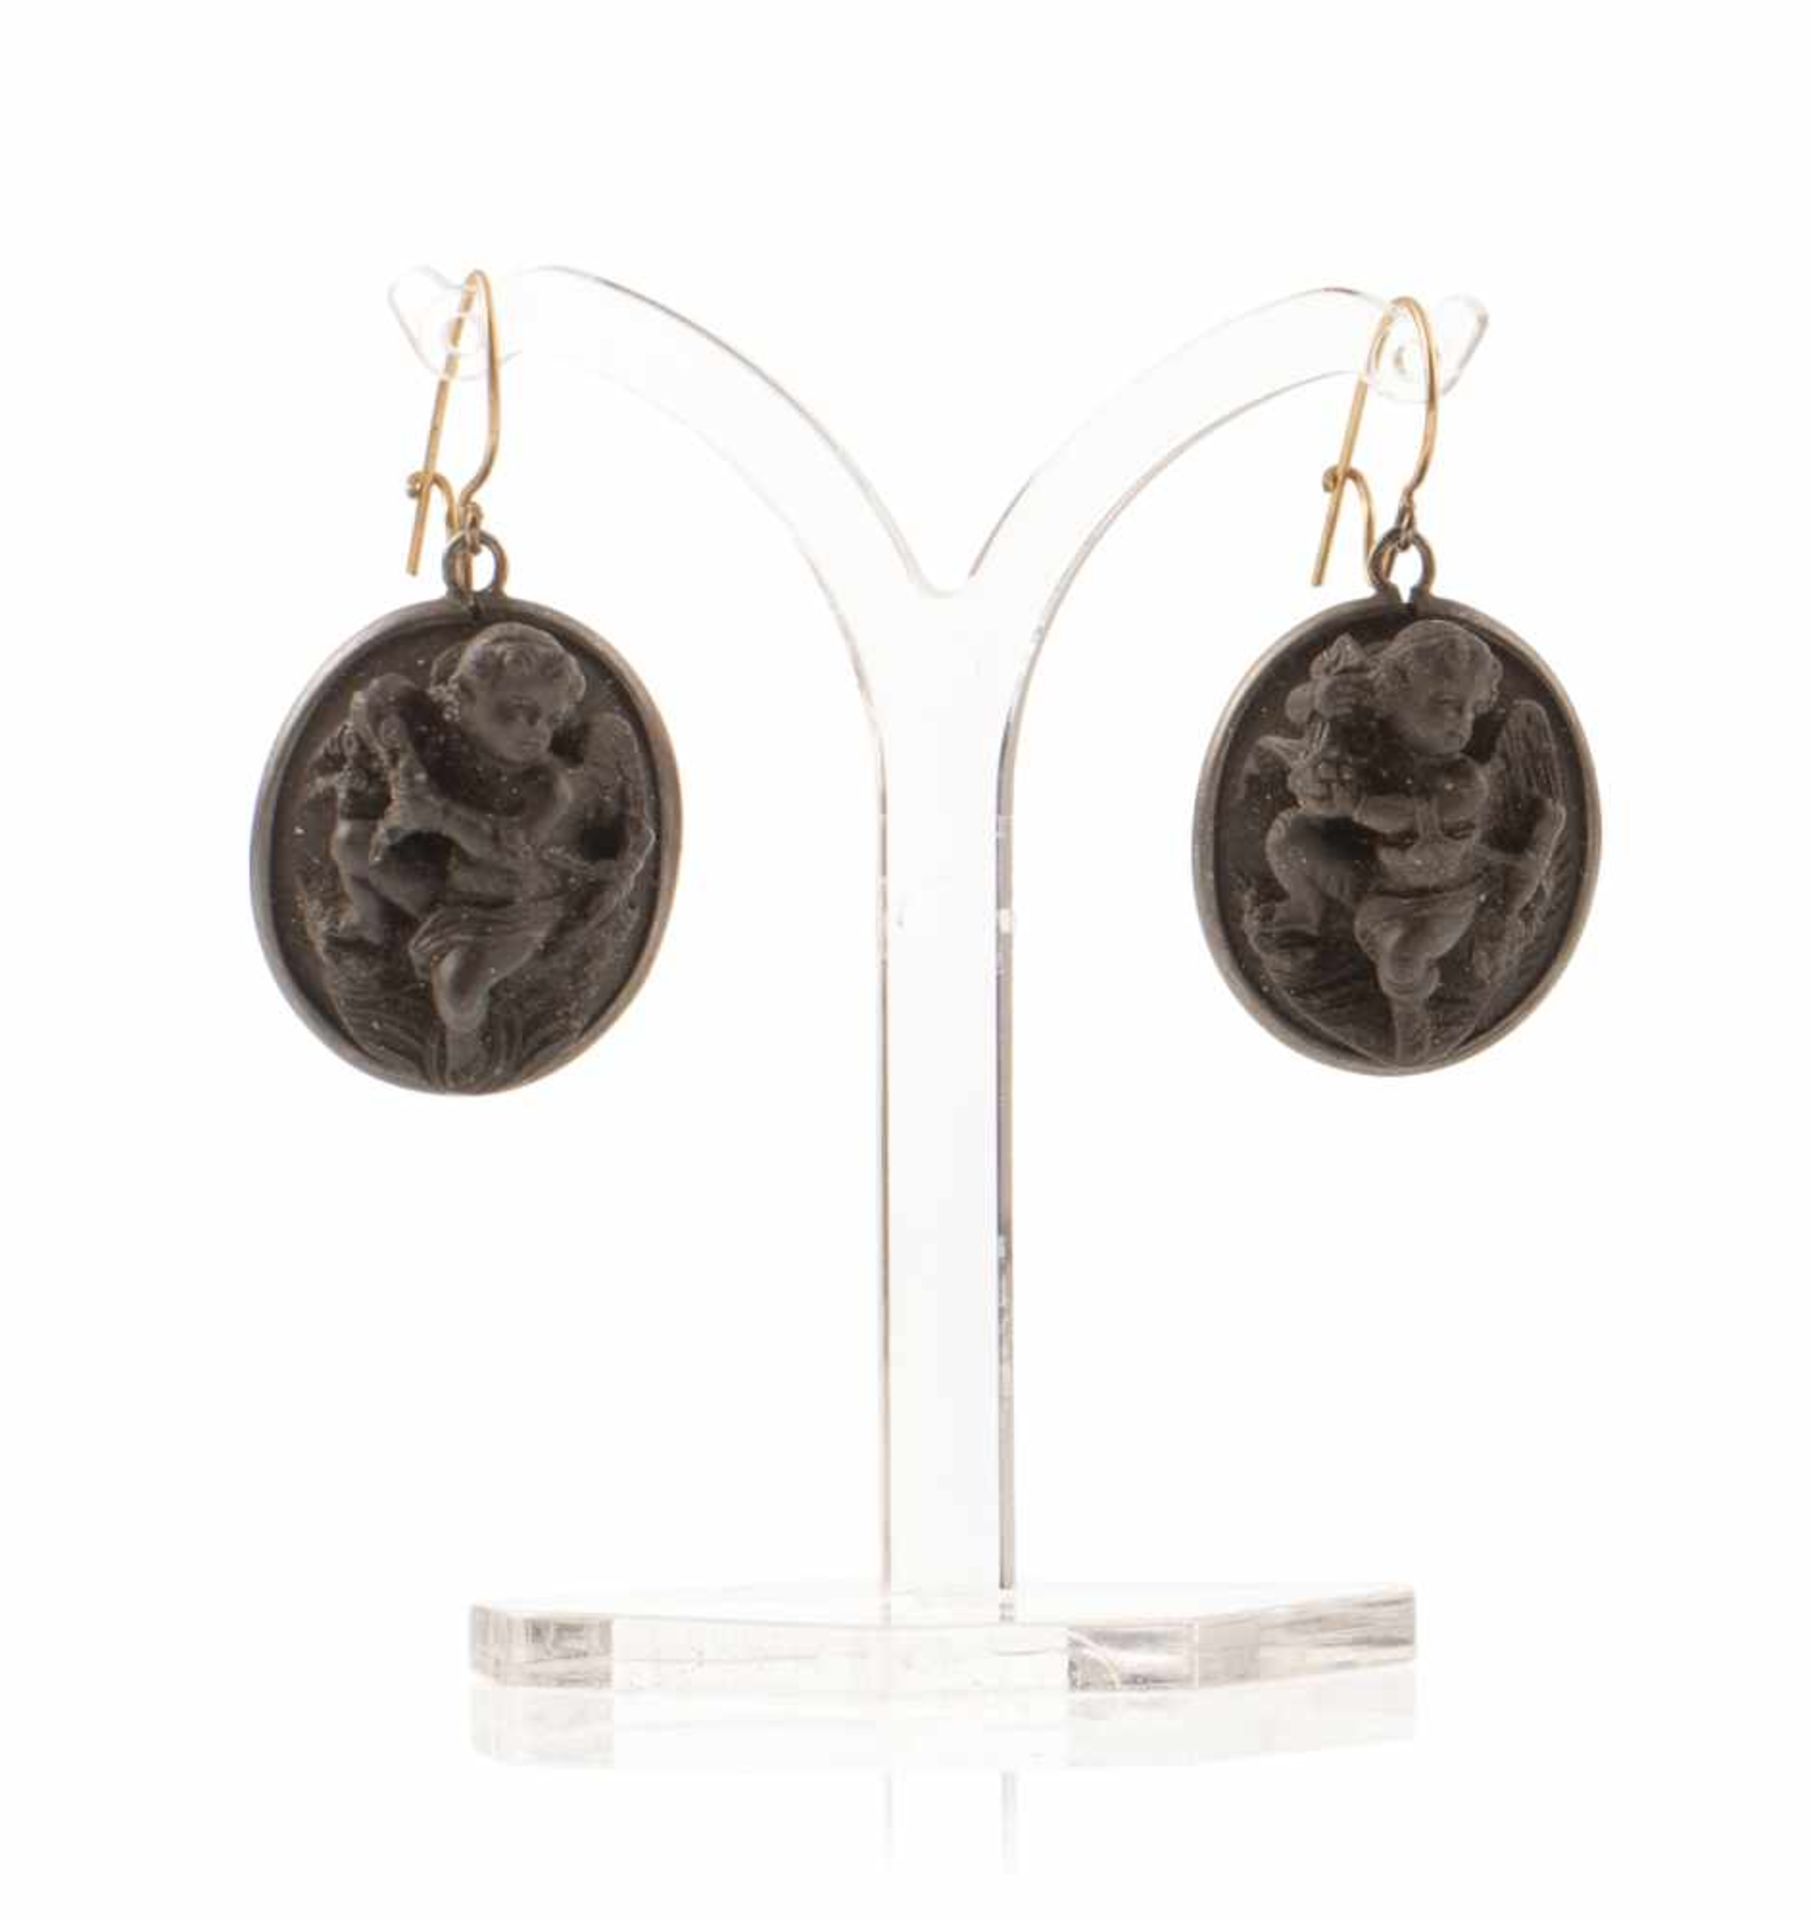 Paar Ohrringe mit LavagemmenItalien, 2. Viertel 19. JahrhundertL. 3,8 cmOvale, schwarze Lavagemmen